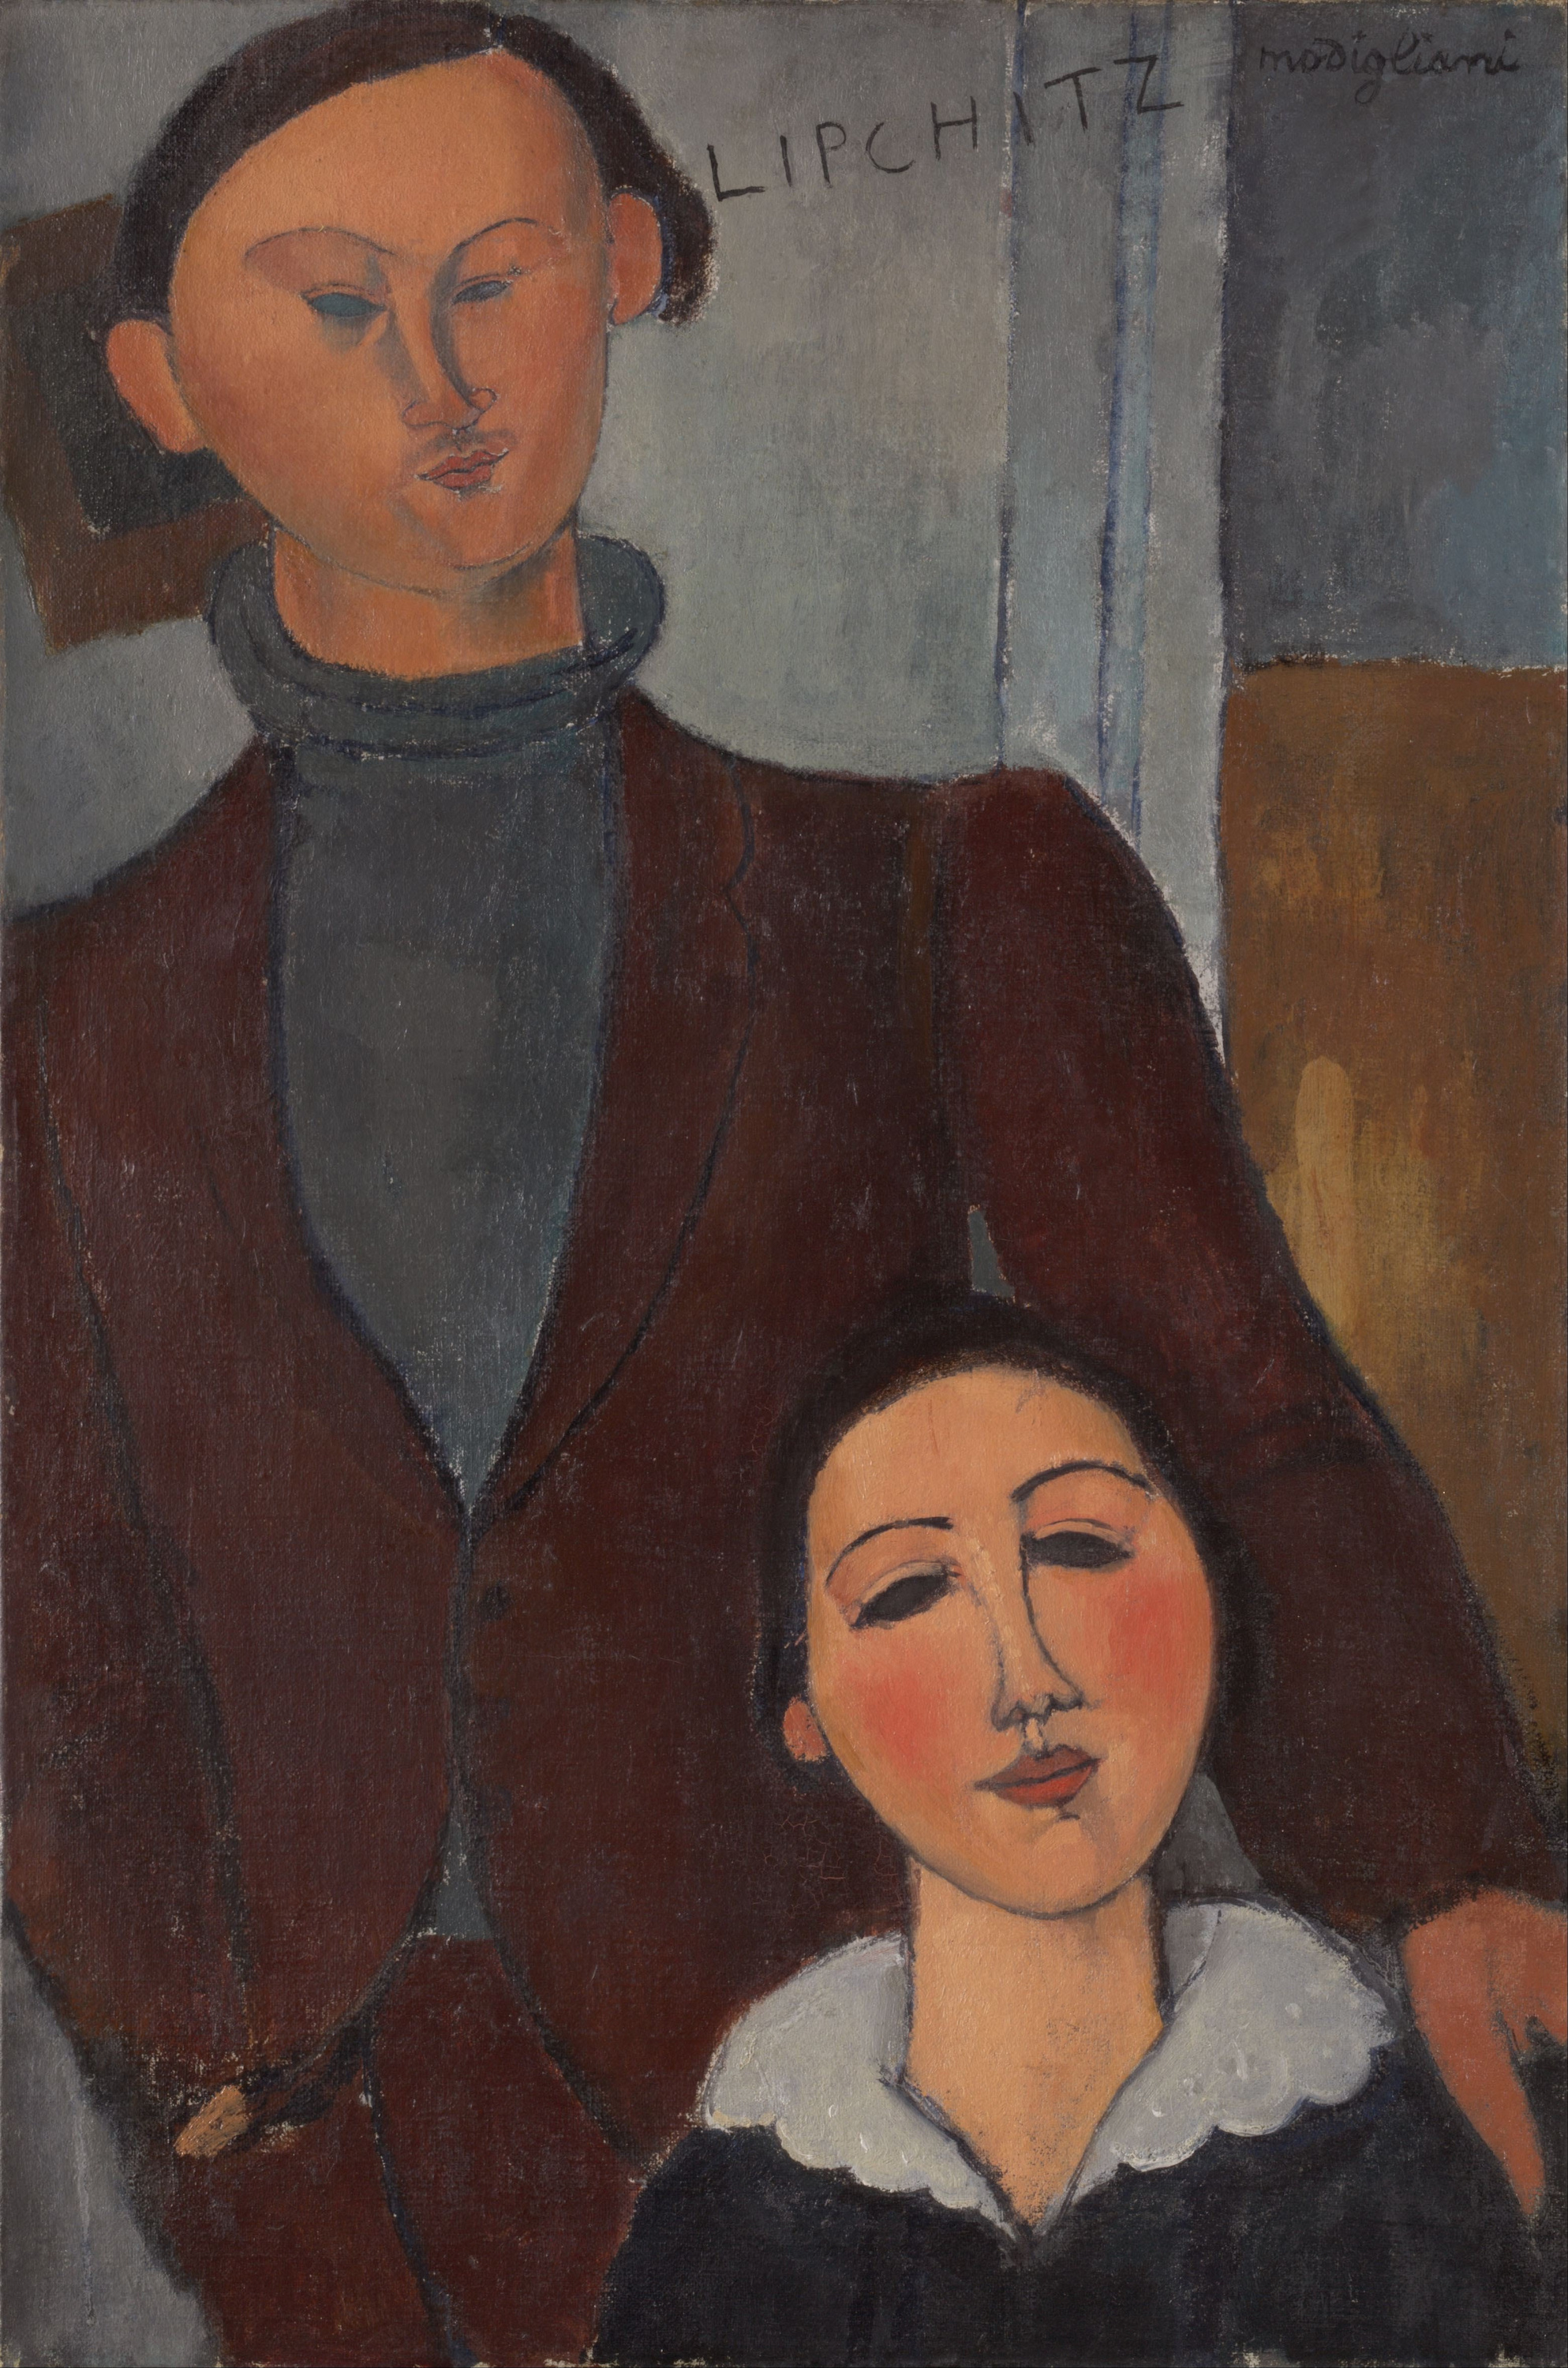 Jacques y Berthe Lipchitz by Amedeo Modigliani - 1916 - 81 × 54 cm Instituto de Arte de Chicago